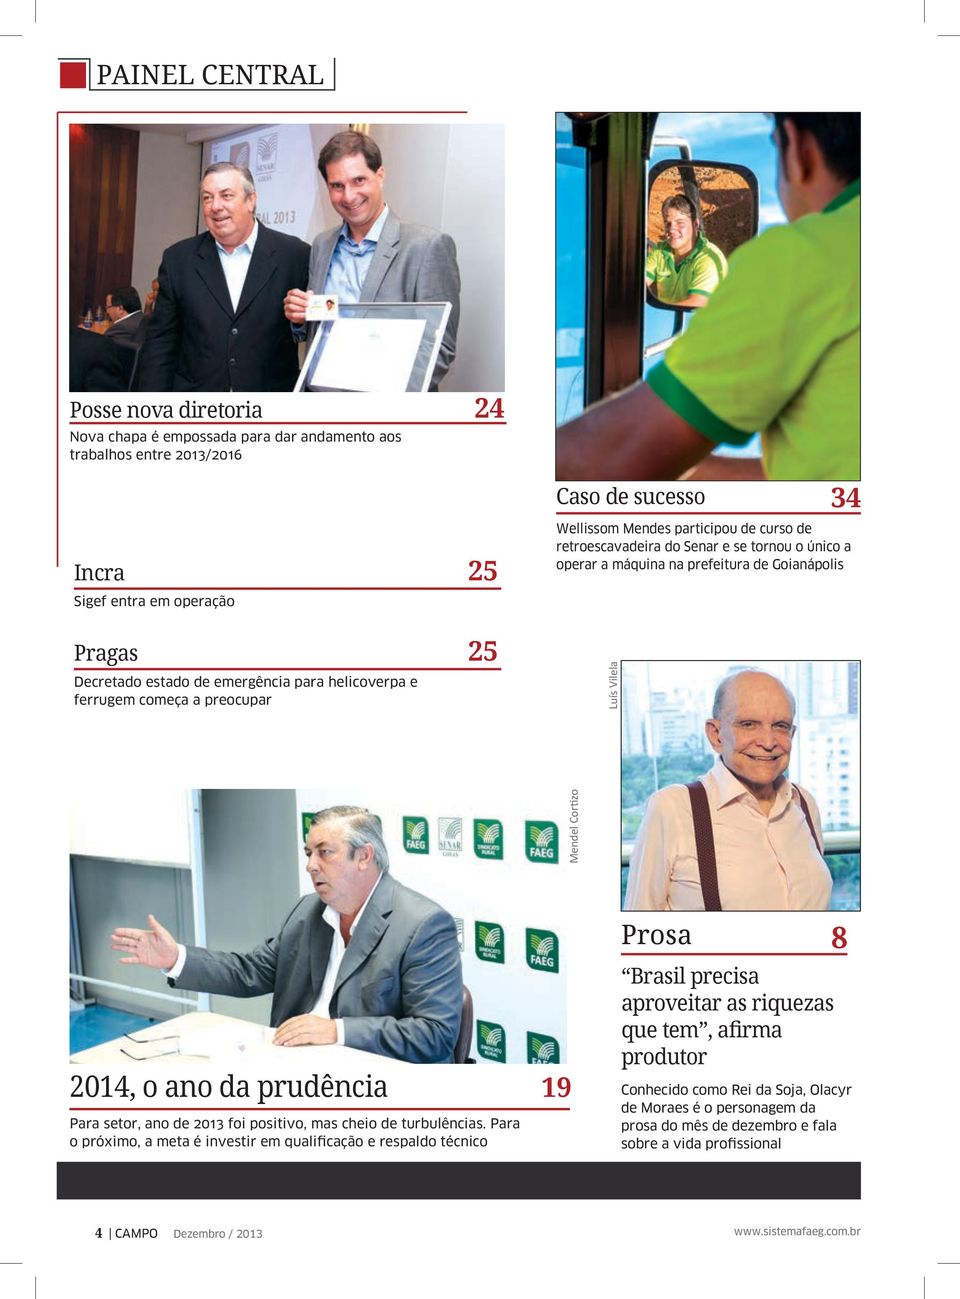 Goianápolis Mendel Cortizo 2014, o ano da prudência Para setor, ano de 2013 foi positivo, mas cheio de turbulências.